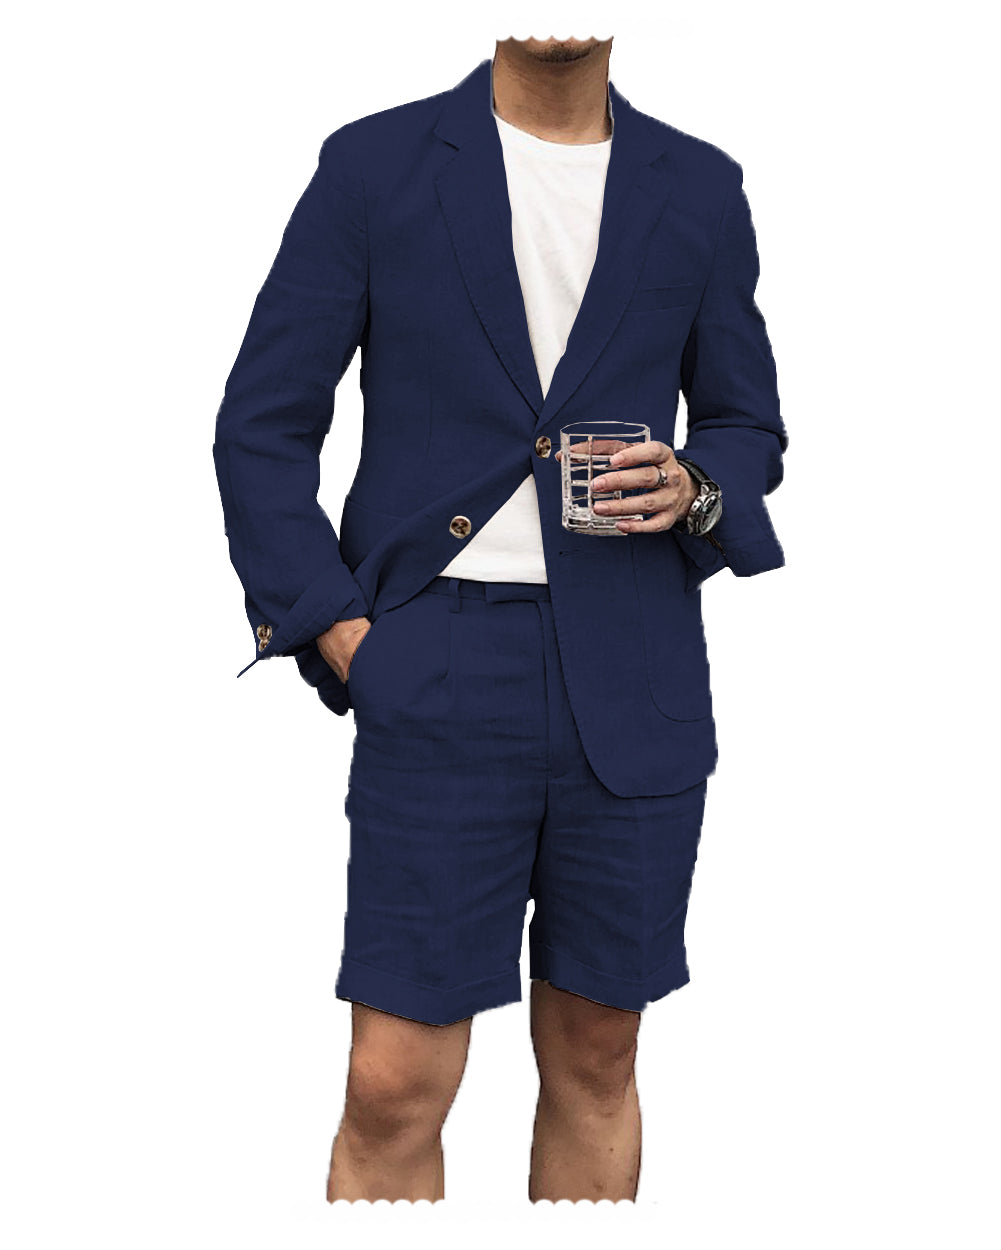 Casual 2 Piece Men's Suit Flat Linen Notch Lapel Tuxedos (Blazer+Shorts) mens event wear